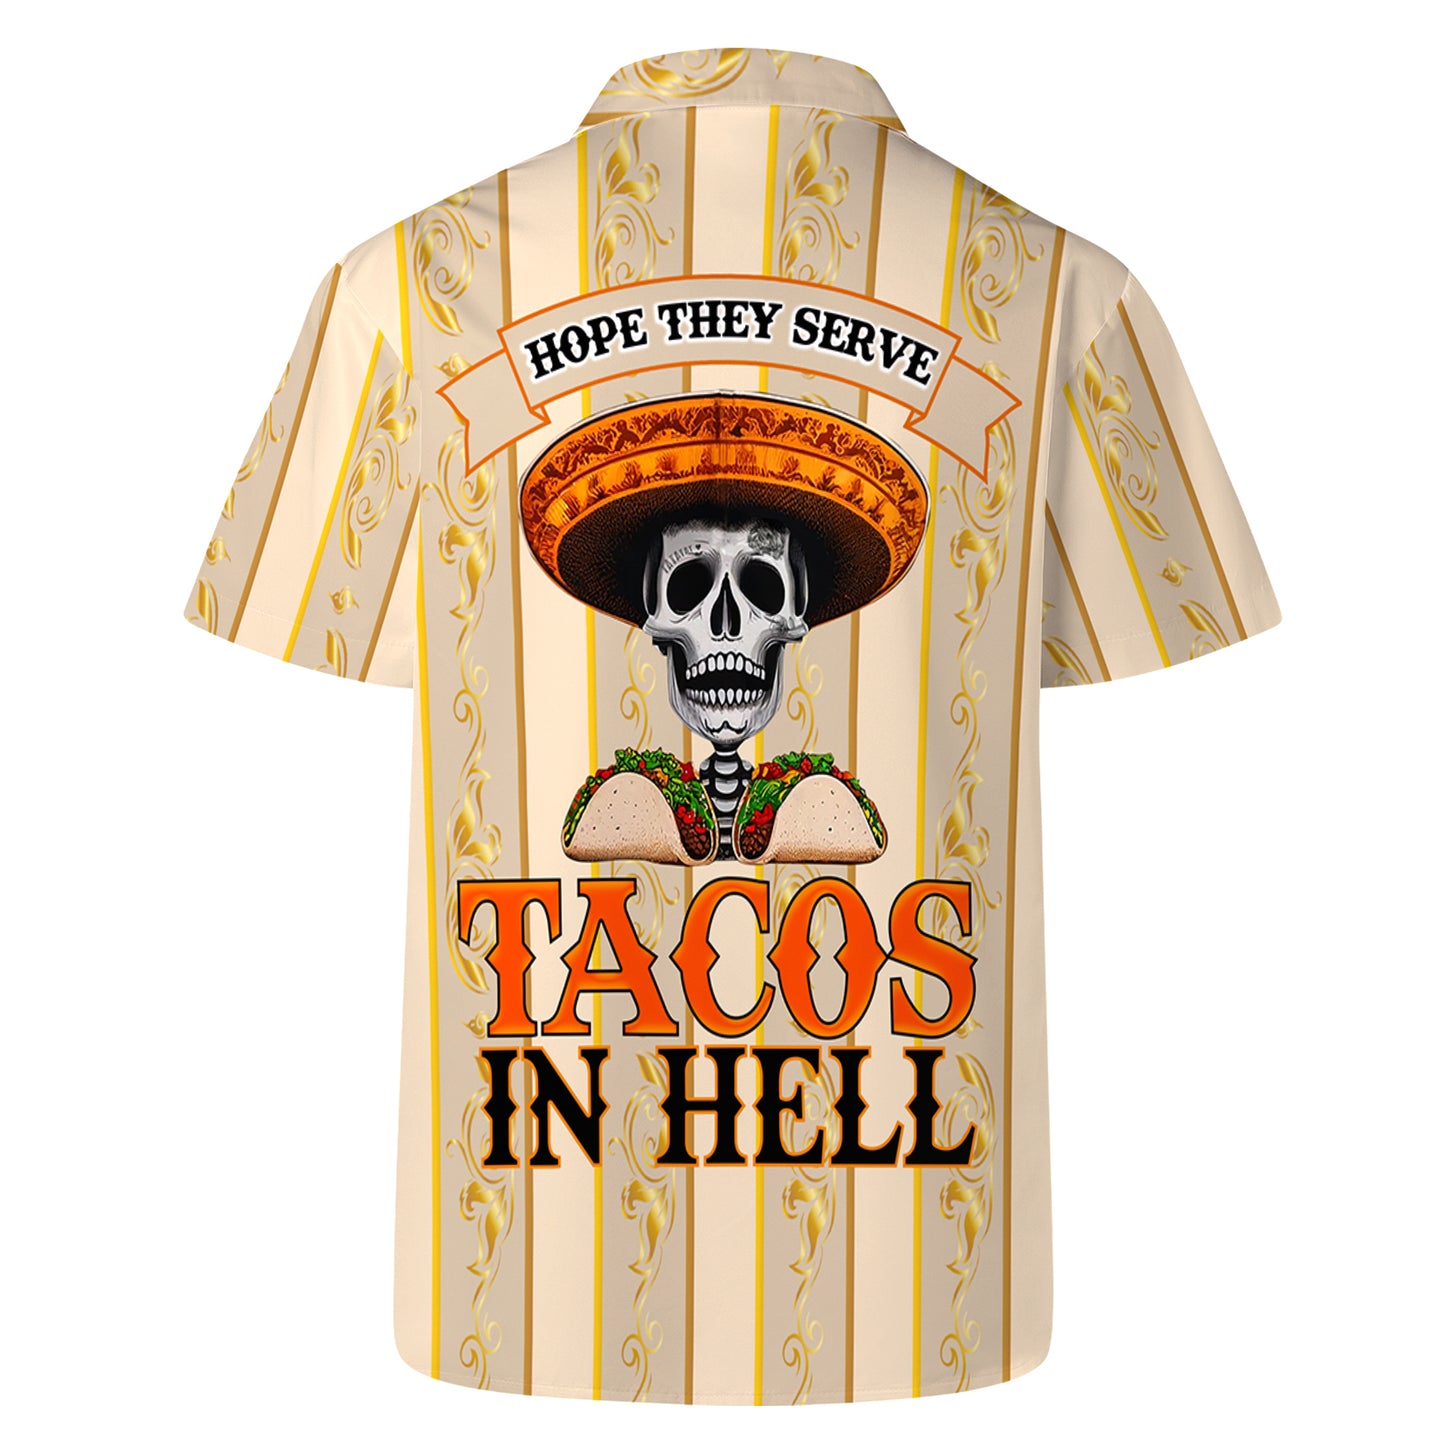 Espero que sirvan tacos en el infierno - Camisa hawaiana unisex personalizada - HW_MX18